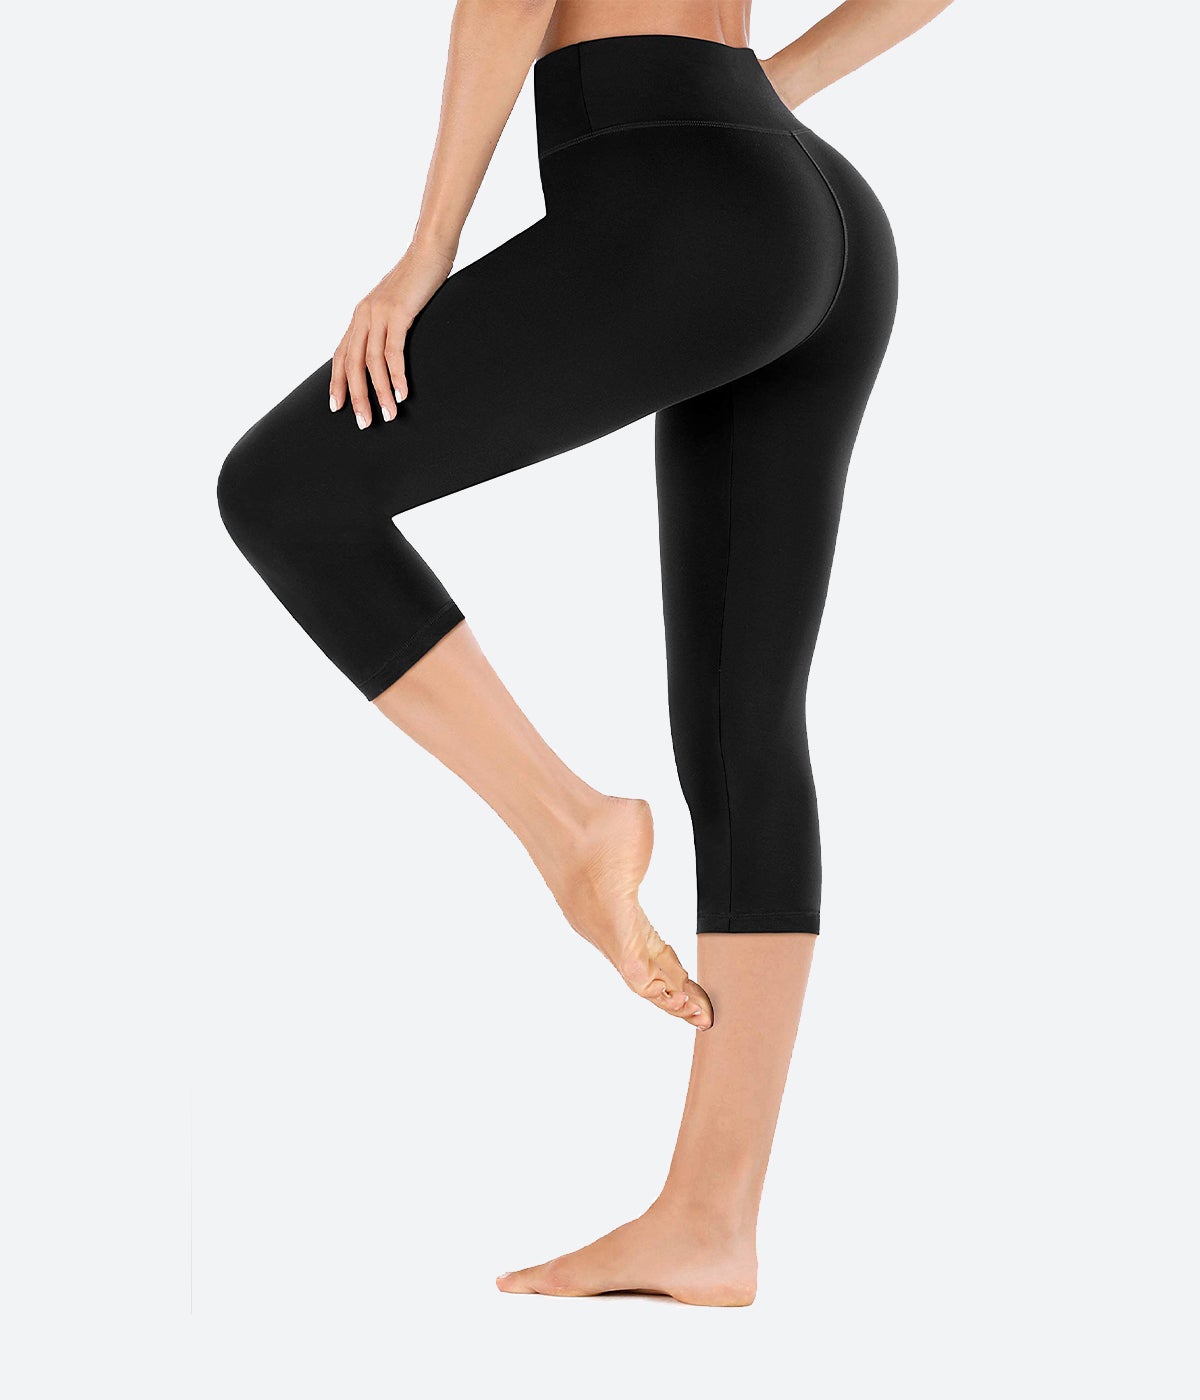 Heathyoga High Waisted Yoga Leggings for Women with Inner Pocket Yoga